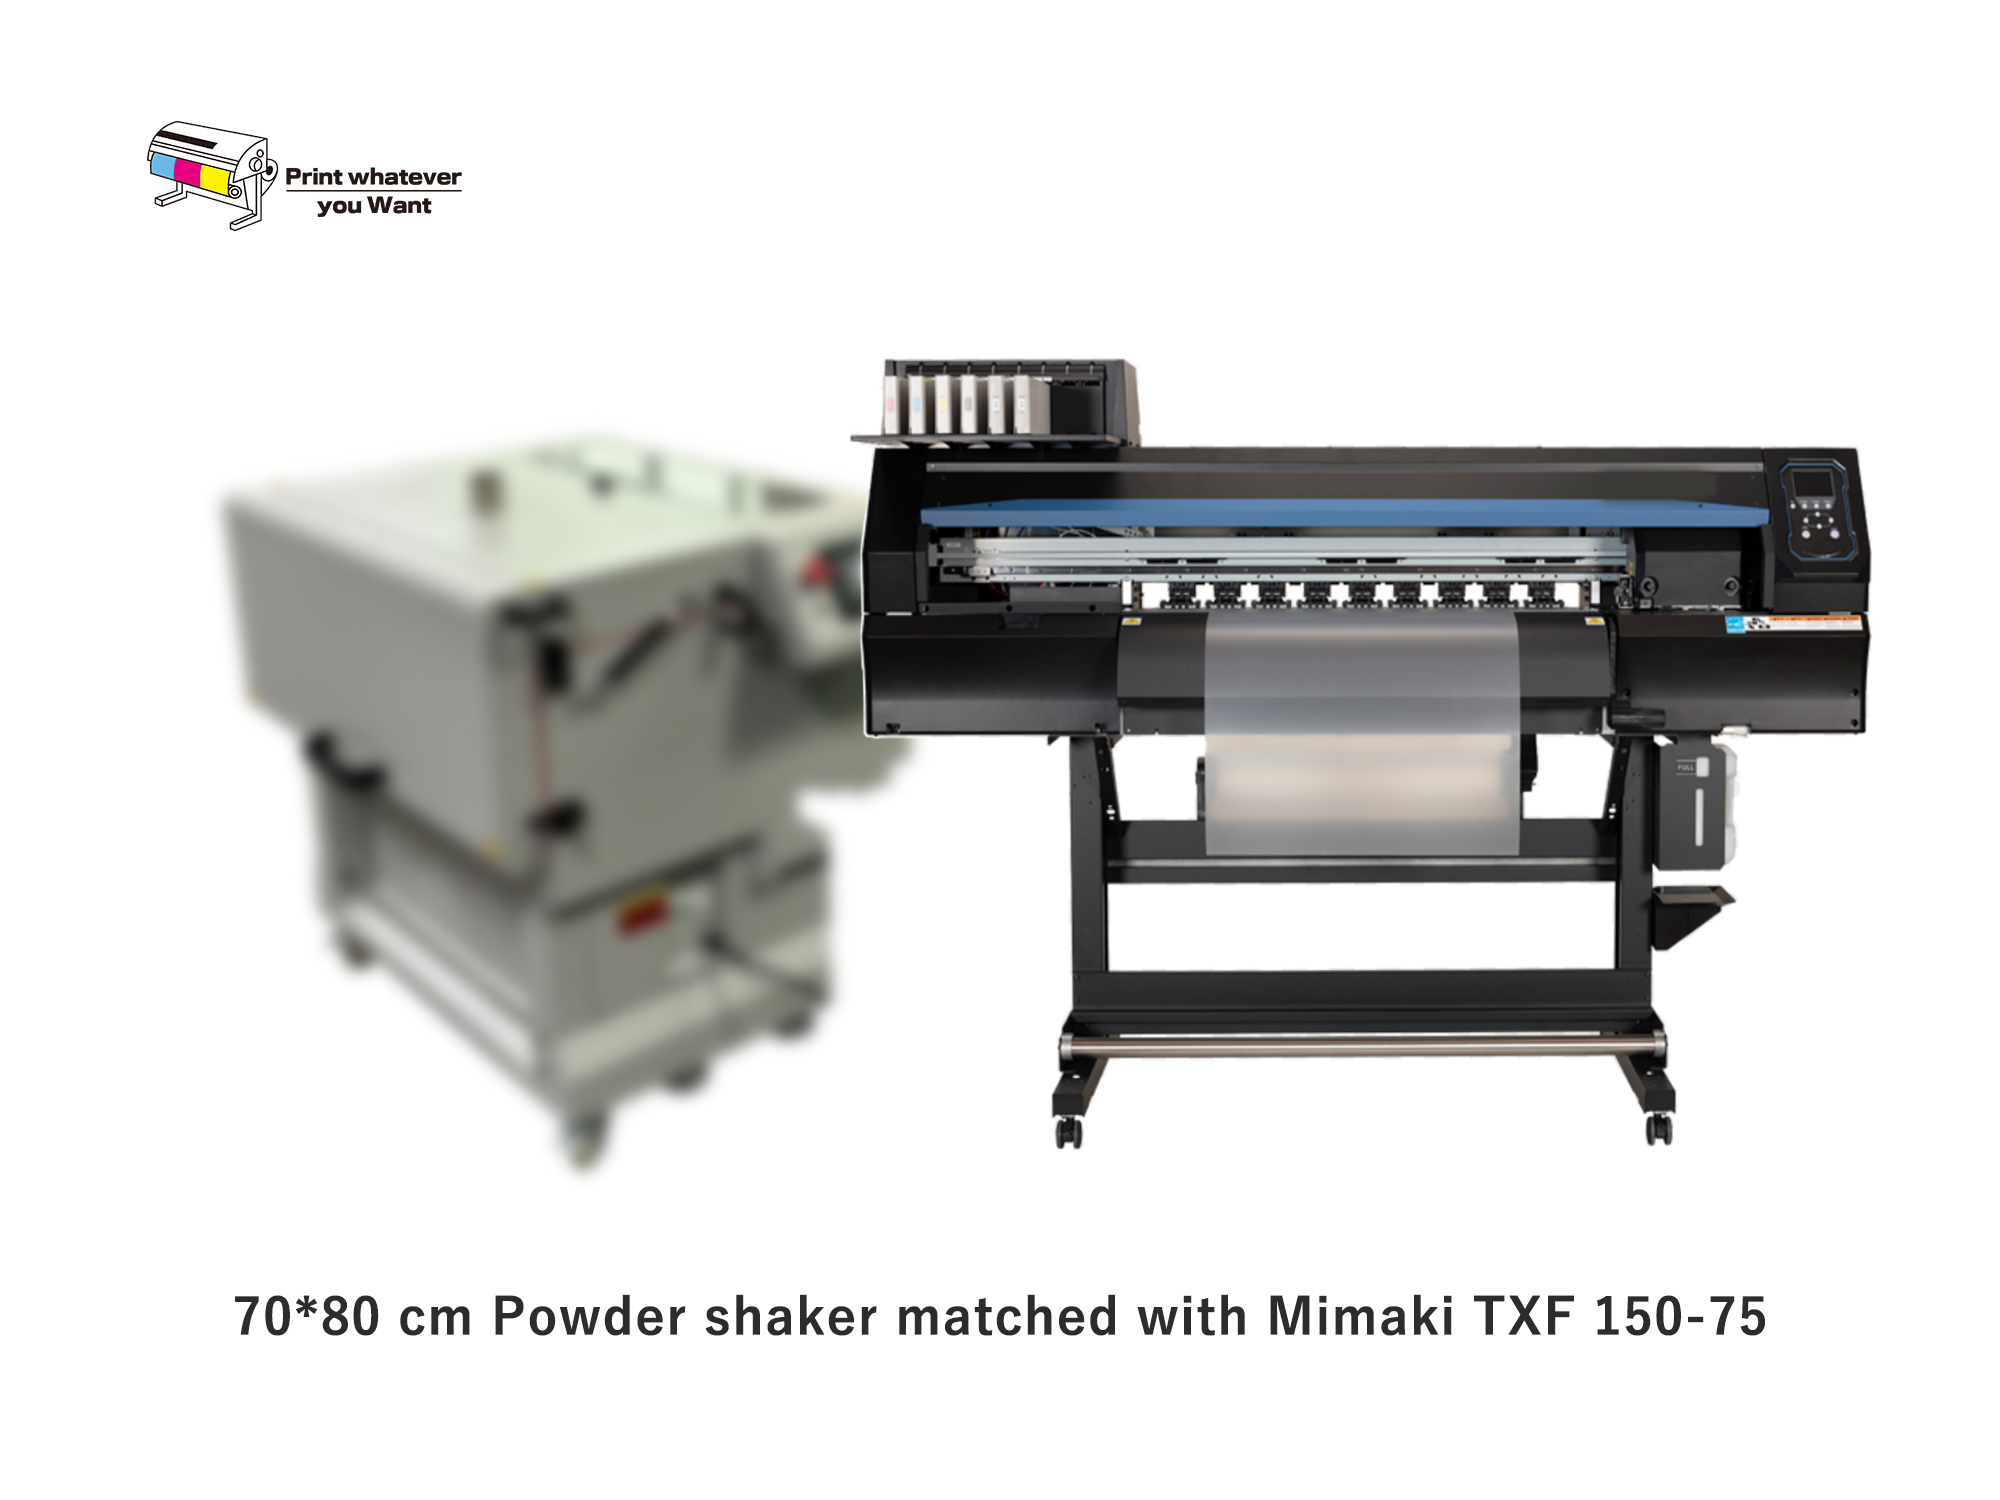 PrintWant nouveau shaker à poudre assorti avec Mimaki TXF 150-75